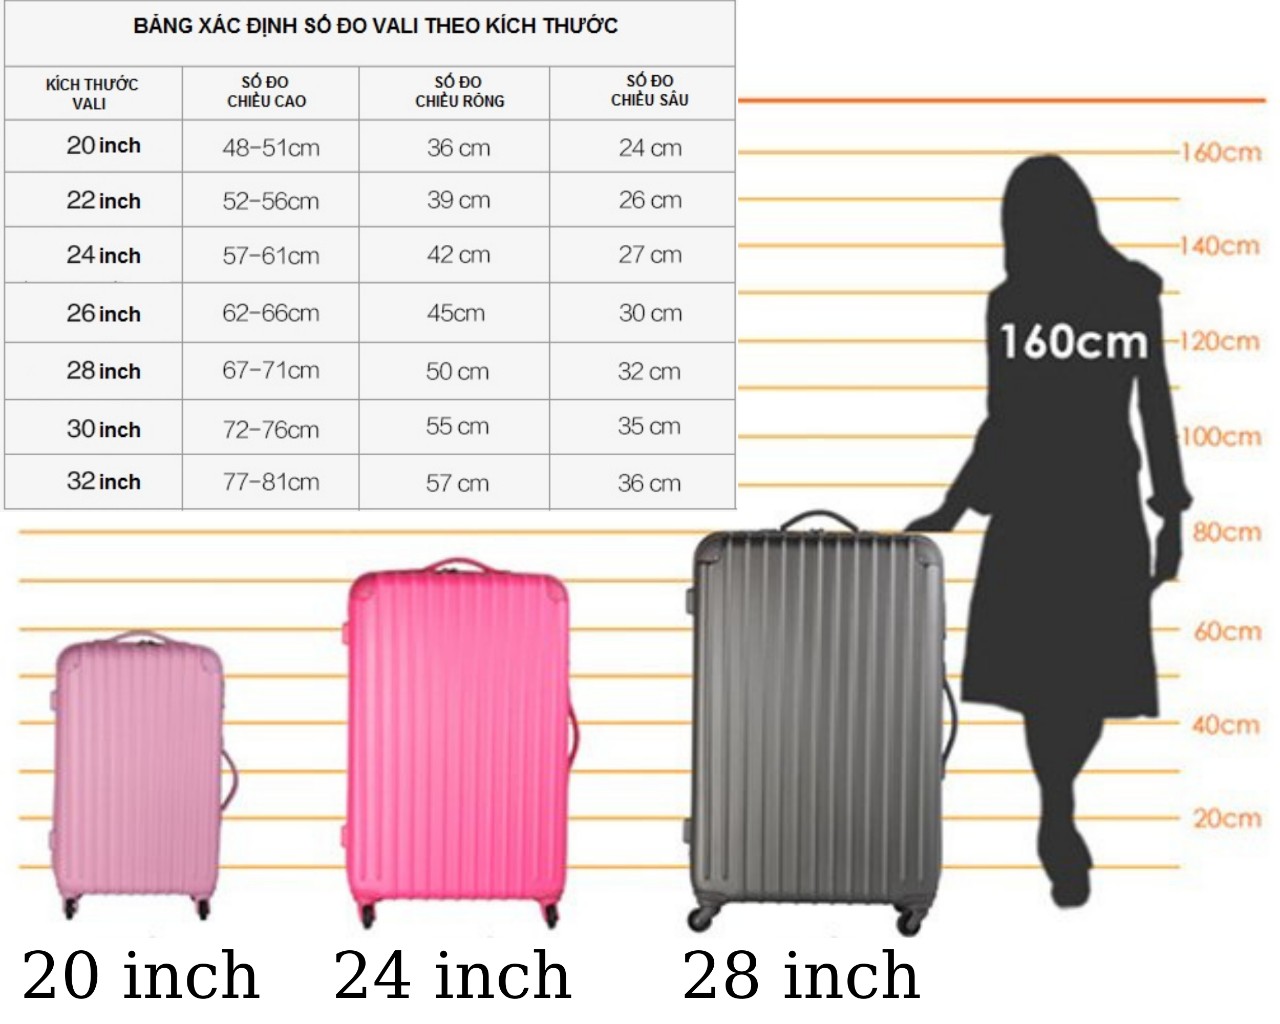 vali nhựa trip p806 size 24 inch, có khóa bảo mật, bảo hành 5 năm - freeship 11